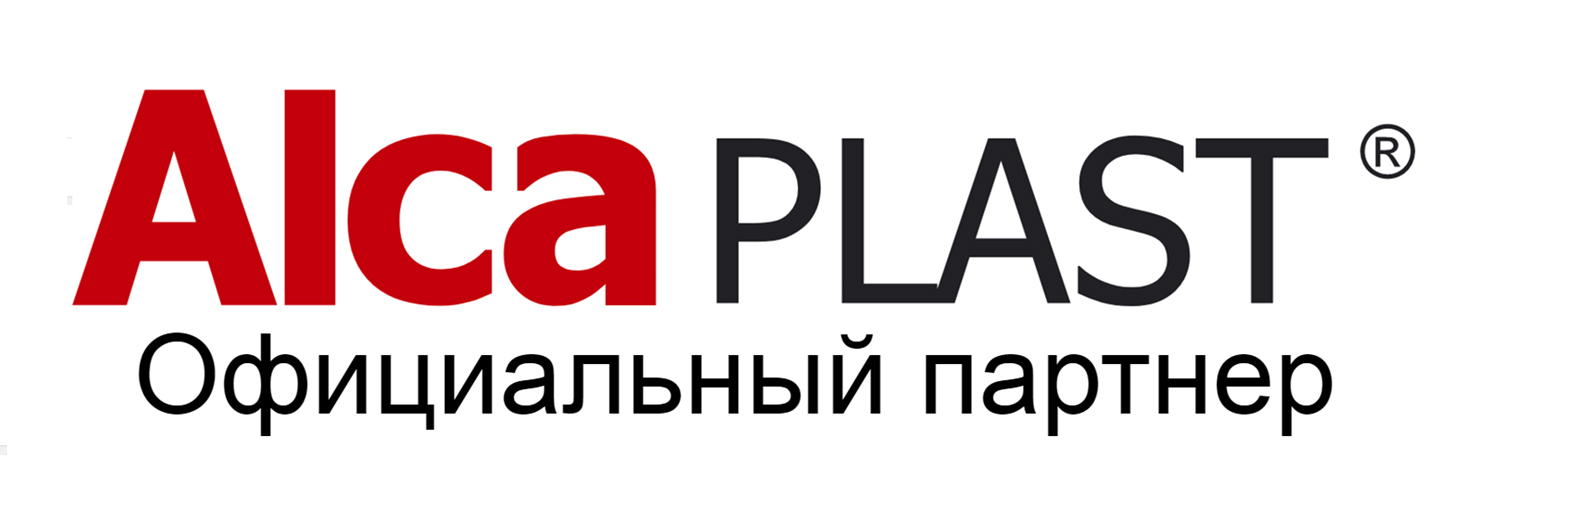 Логотип сайта Alcaplast